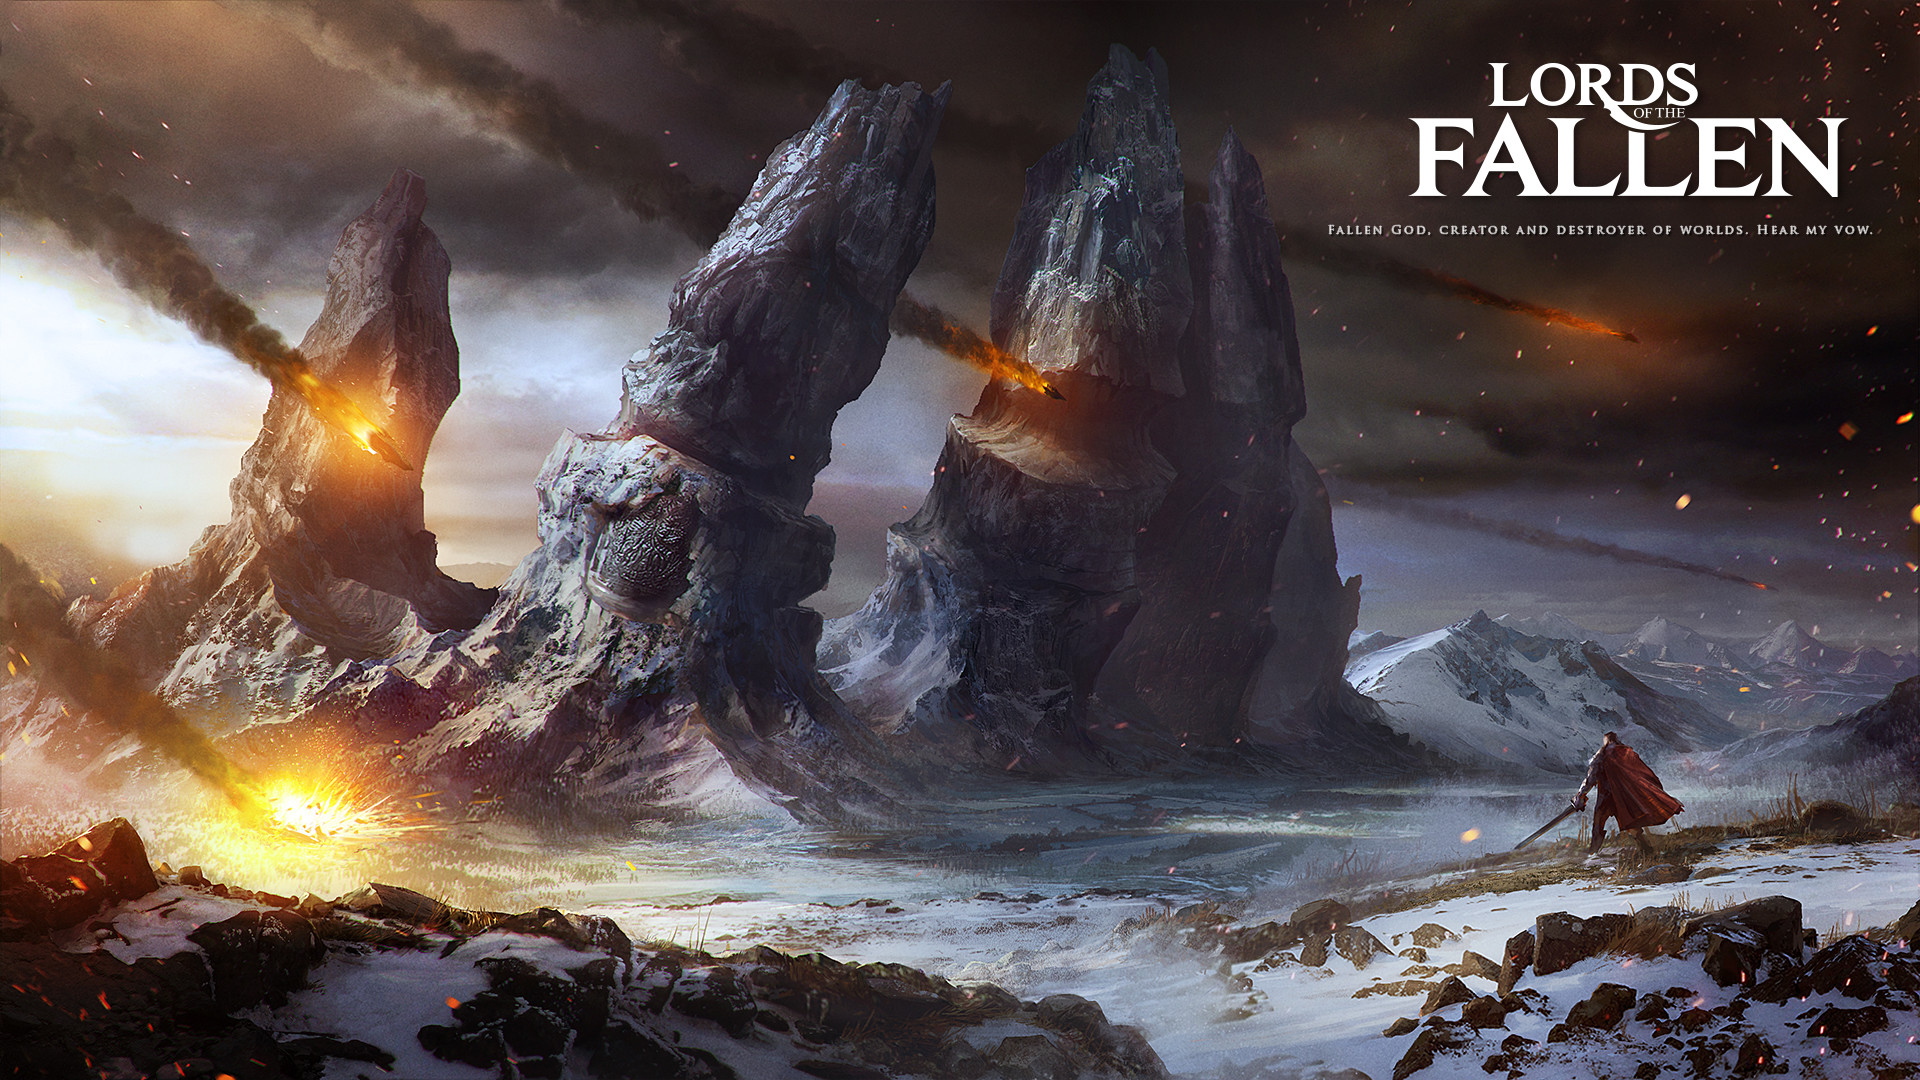 Lords of the Fallen: Edição de Colecionador é incrível; veja